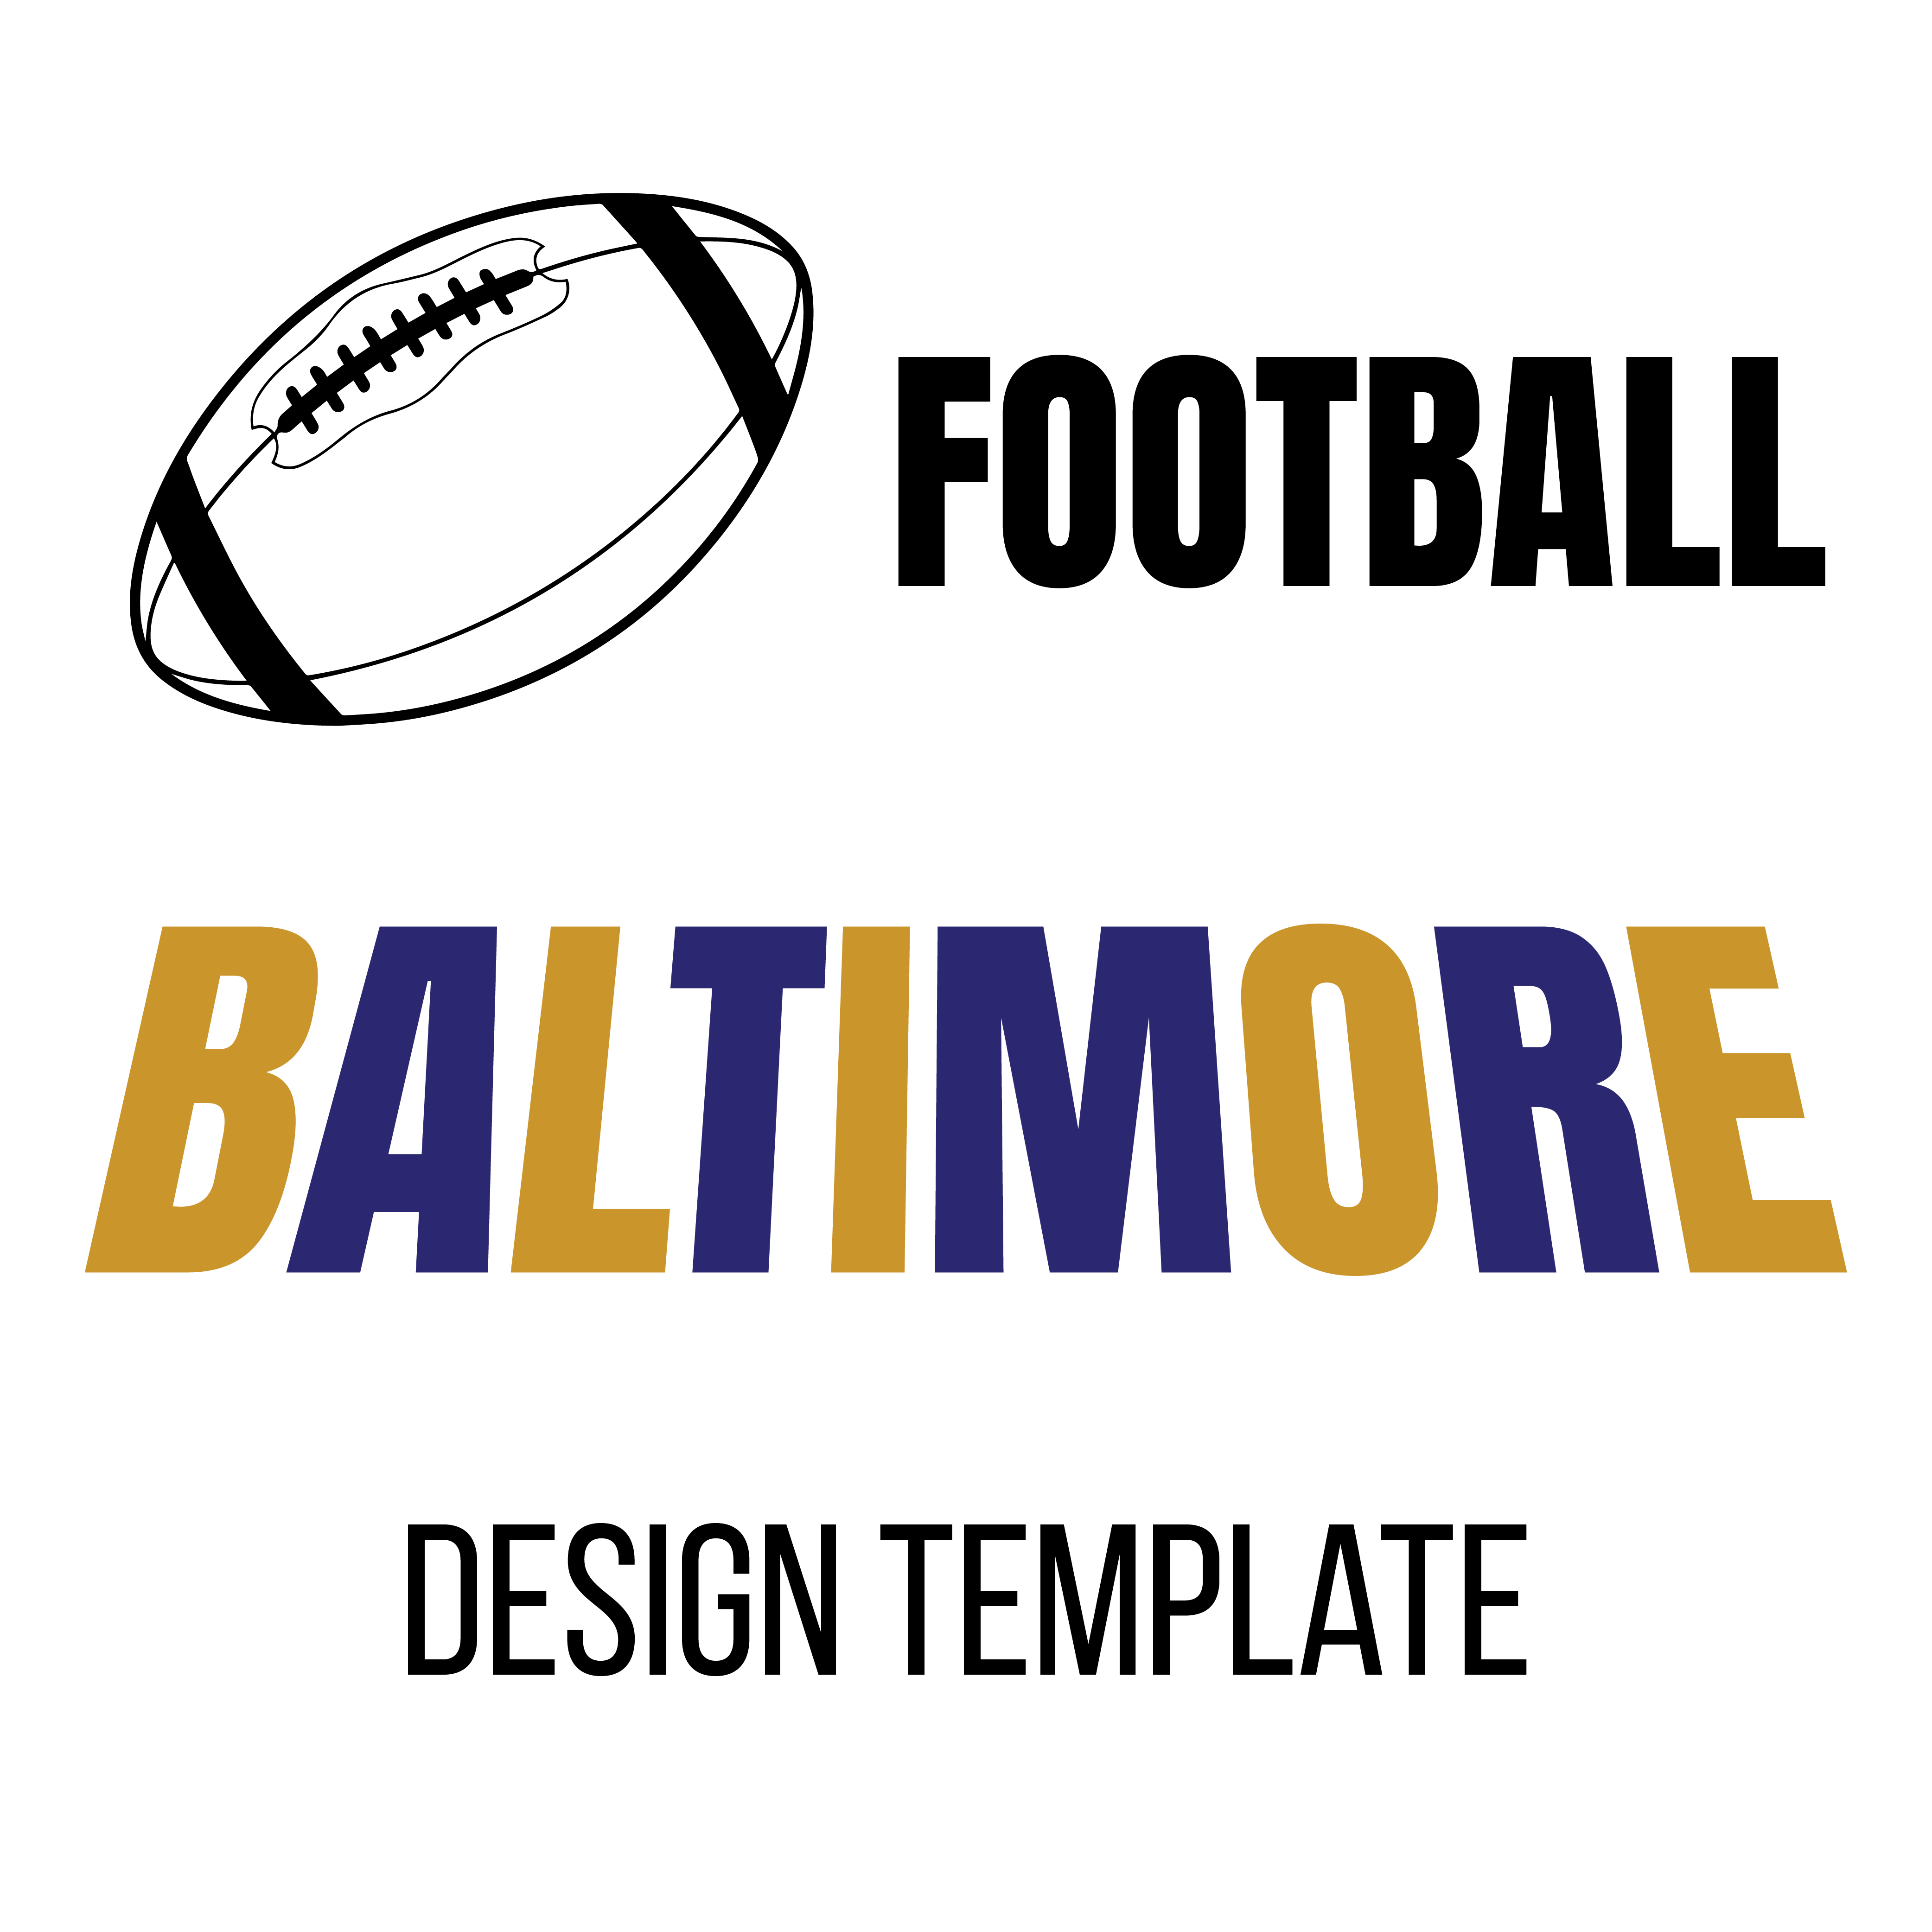 Football T-shirt Designs